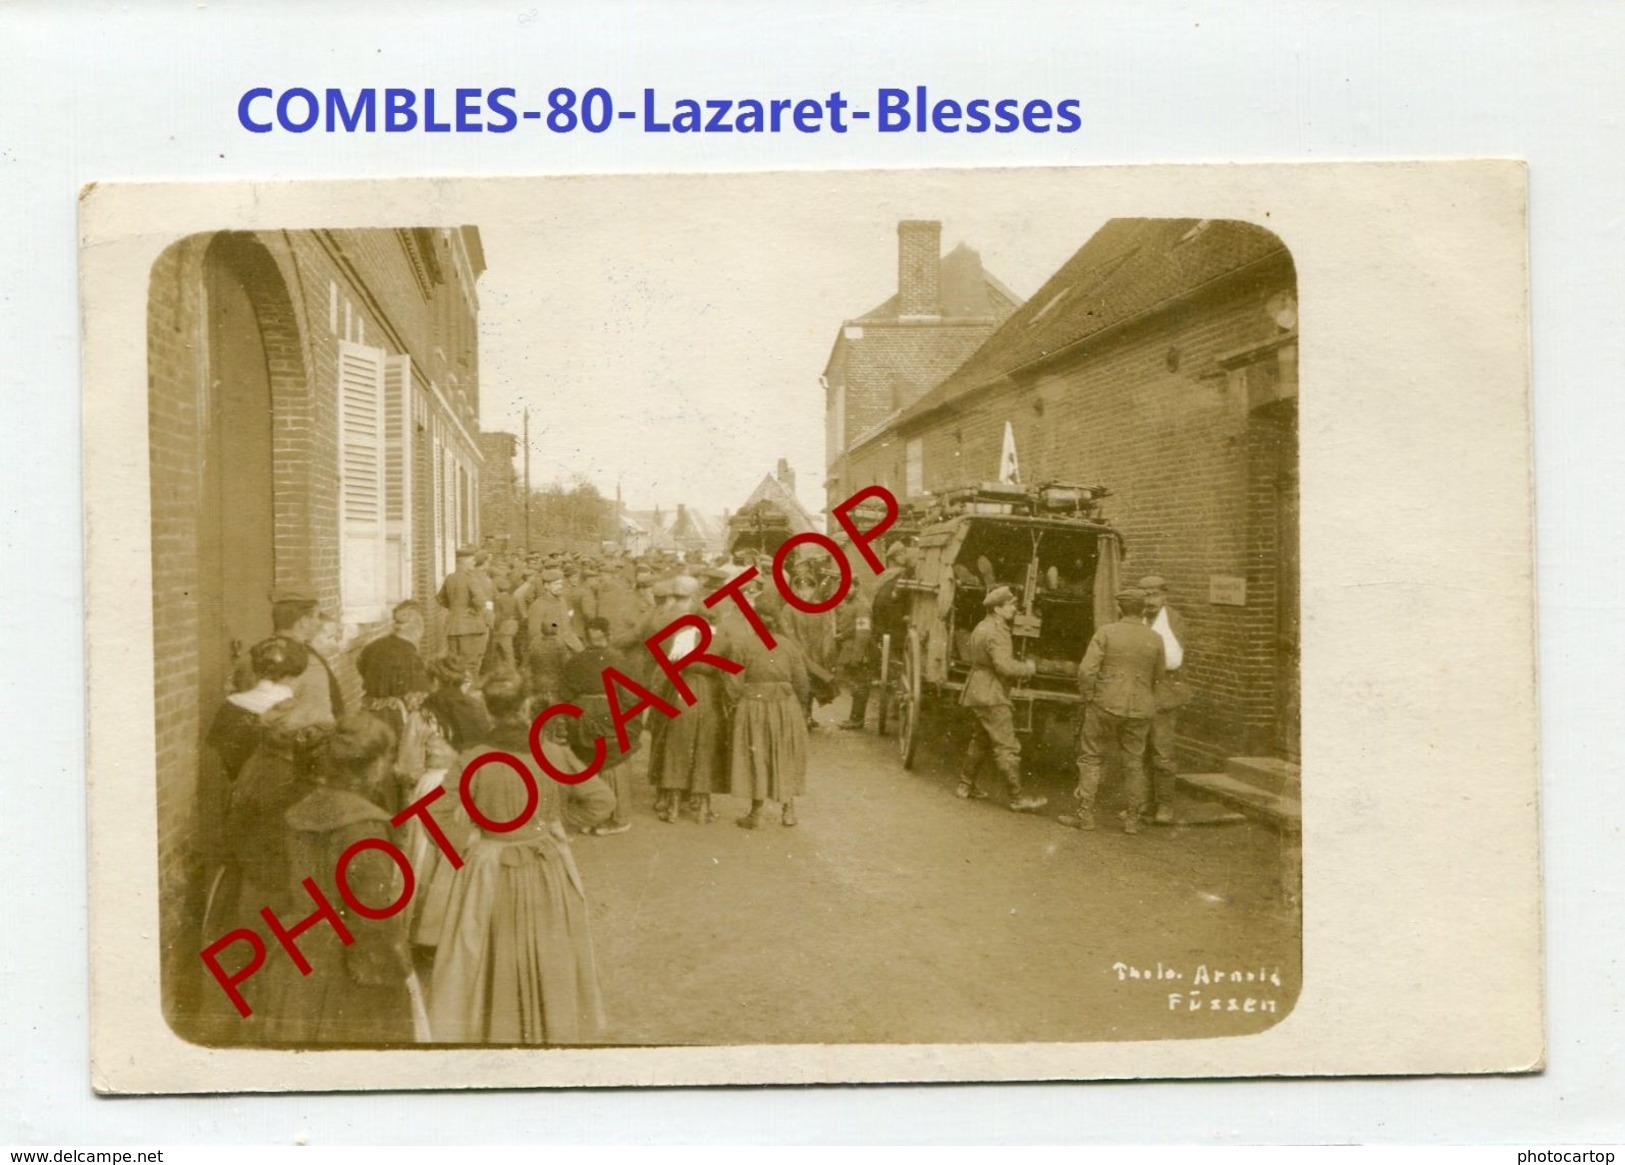 COMBLES-Ambulance-LAZARET-Blesses-Medecine-CARTE PHOTO Allemande-Guerre 14-18-1 WK-France-80-Feldpost- - Combles